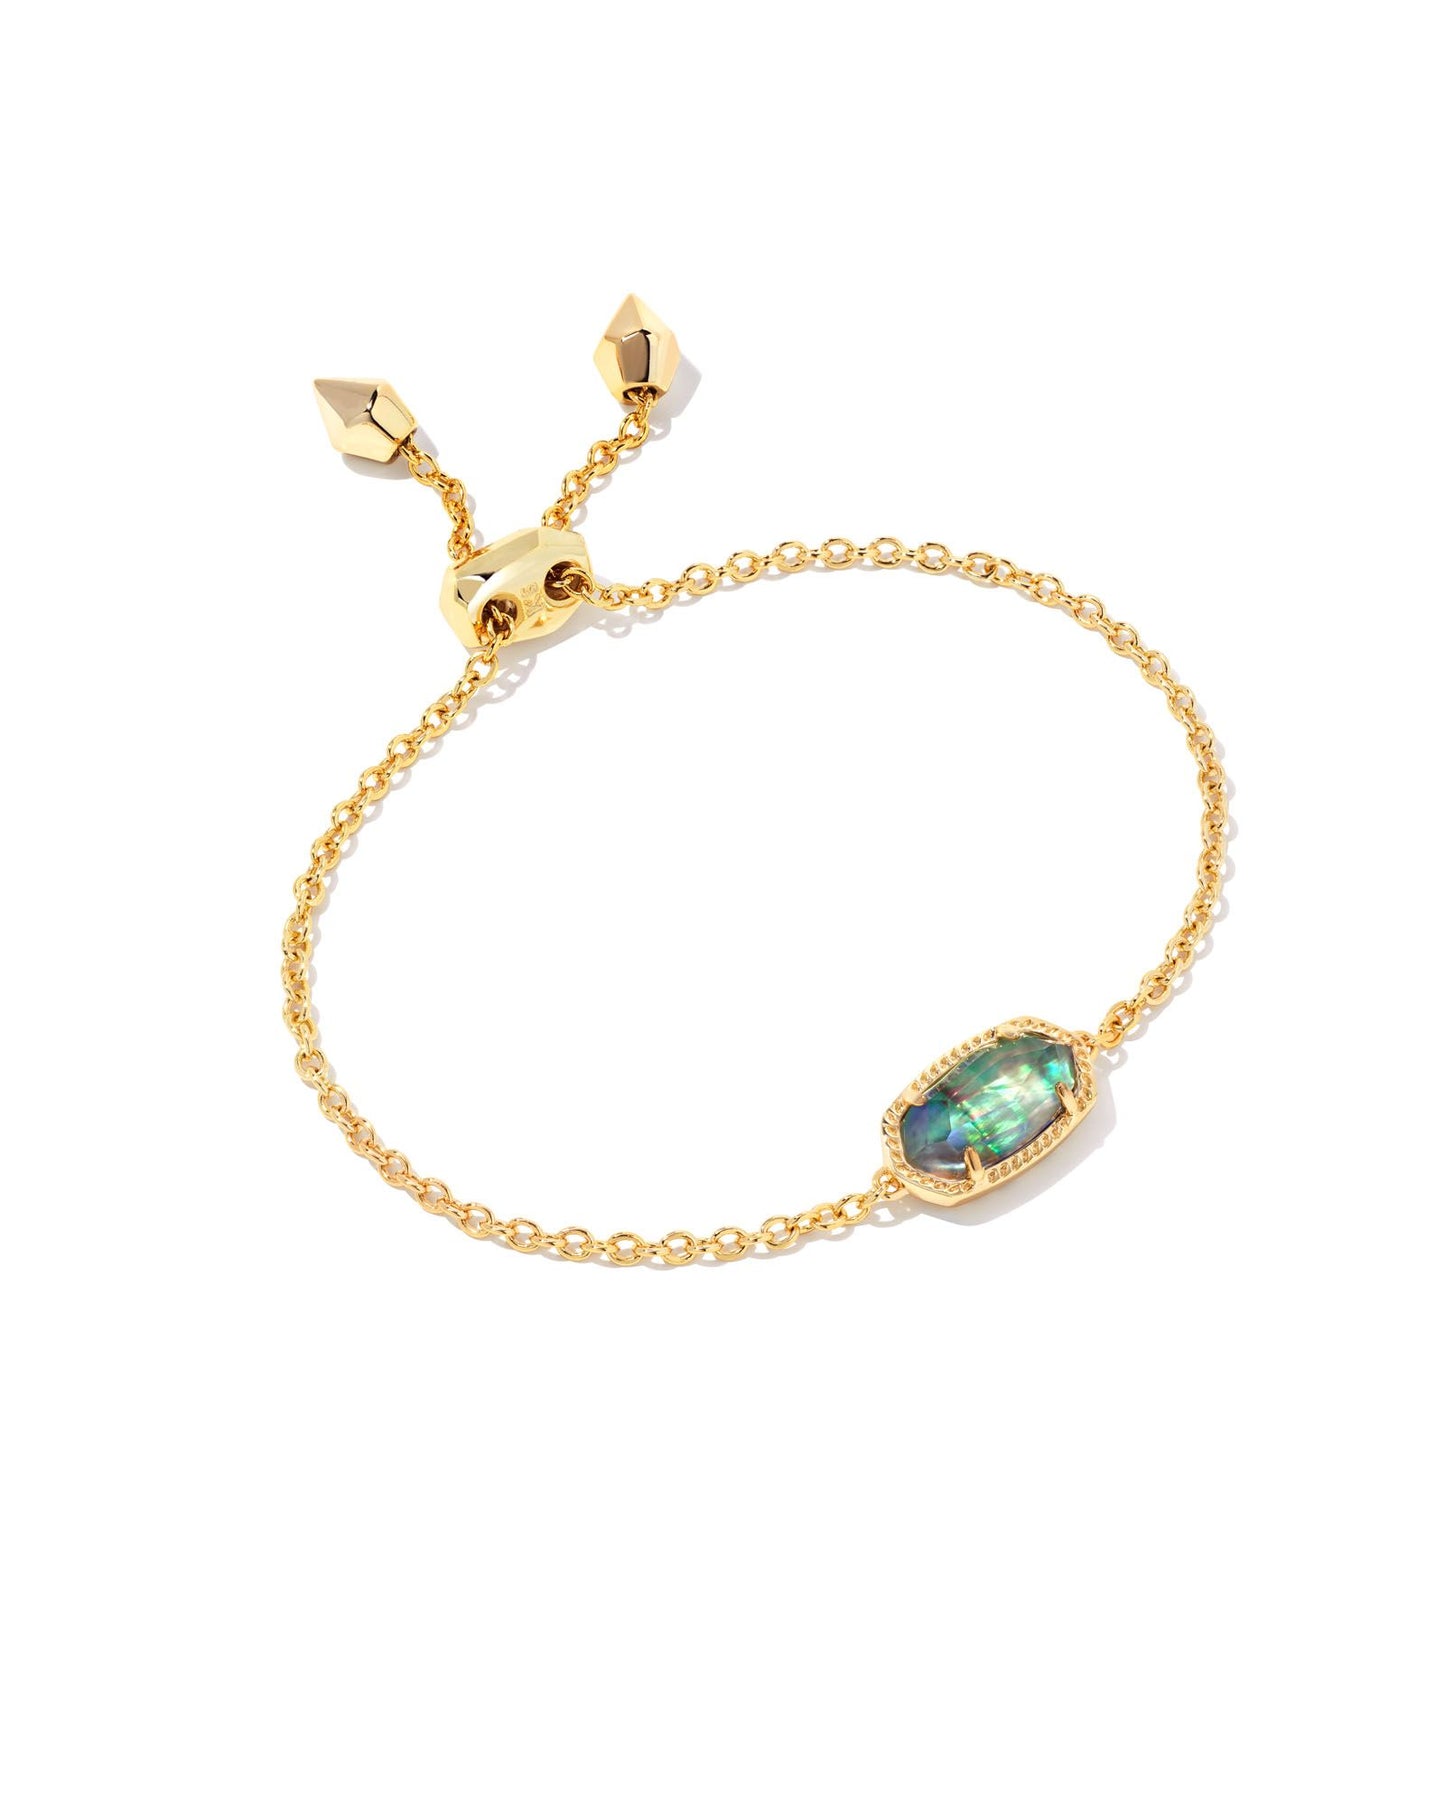 Elaina Gold Adjustable Chain Bracelet | Lilac Abalone